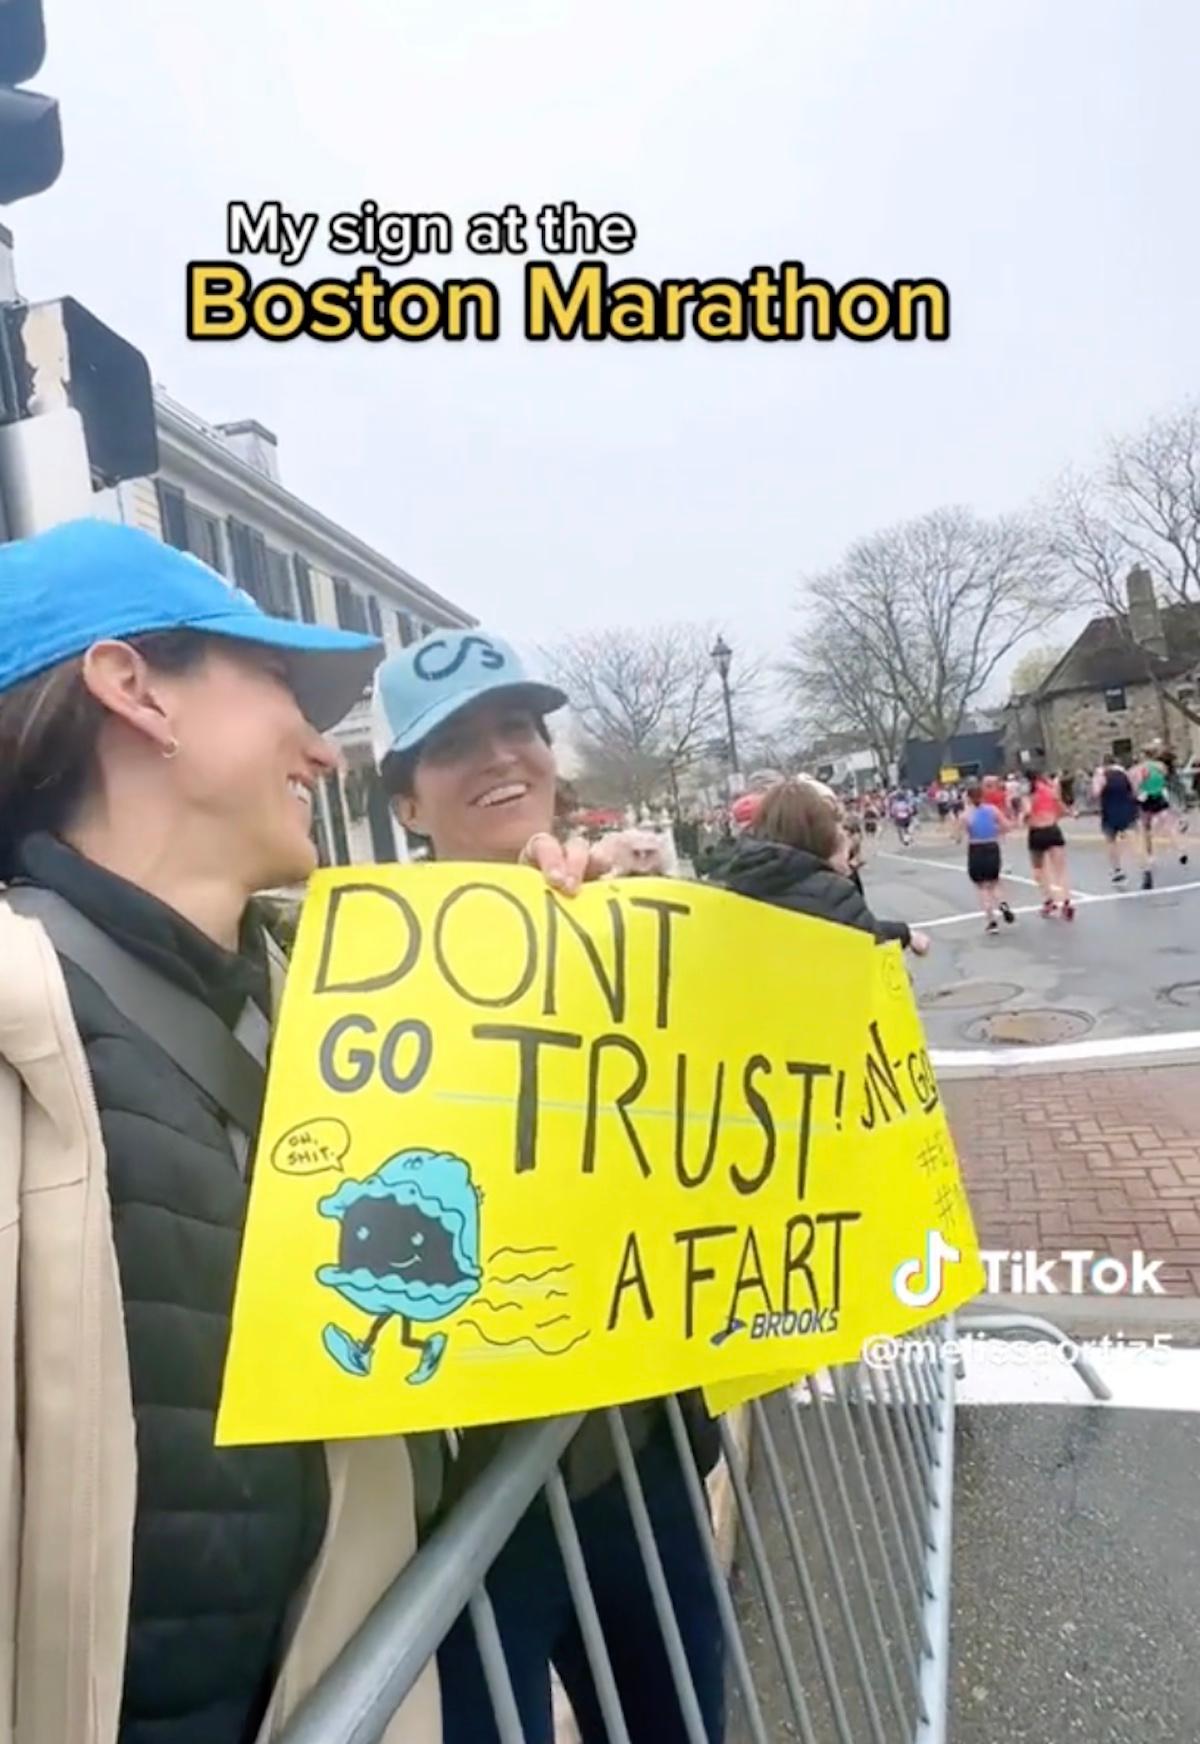 Mulher segurando uma placa que diz "Não vá confiar em um peido" em uma maratona